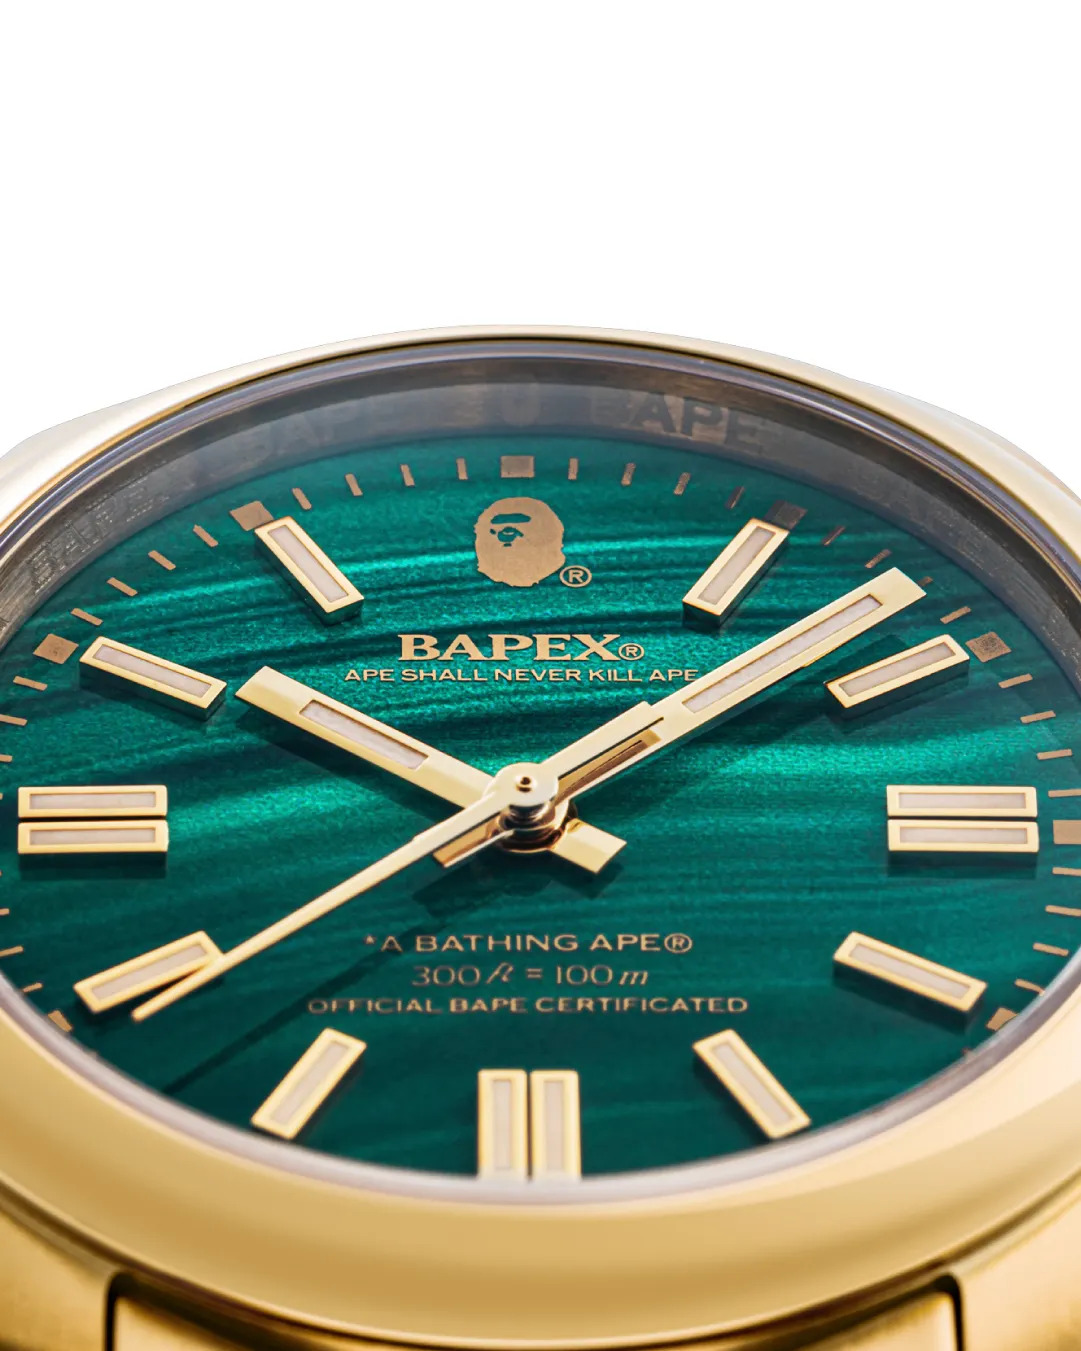 A BATHING APE BAPEXシリーズ TYPE7 新色が11/25、11/26 発売 (ア ベイシング エイプ)